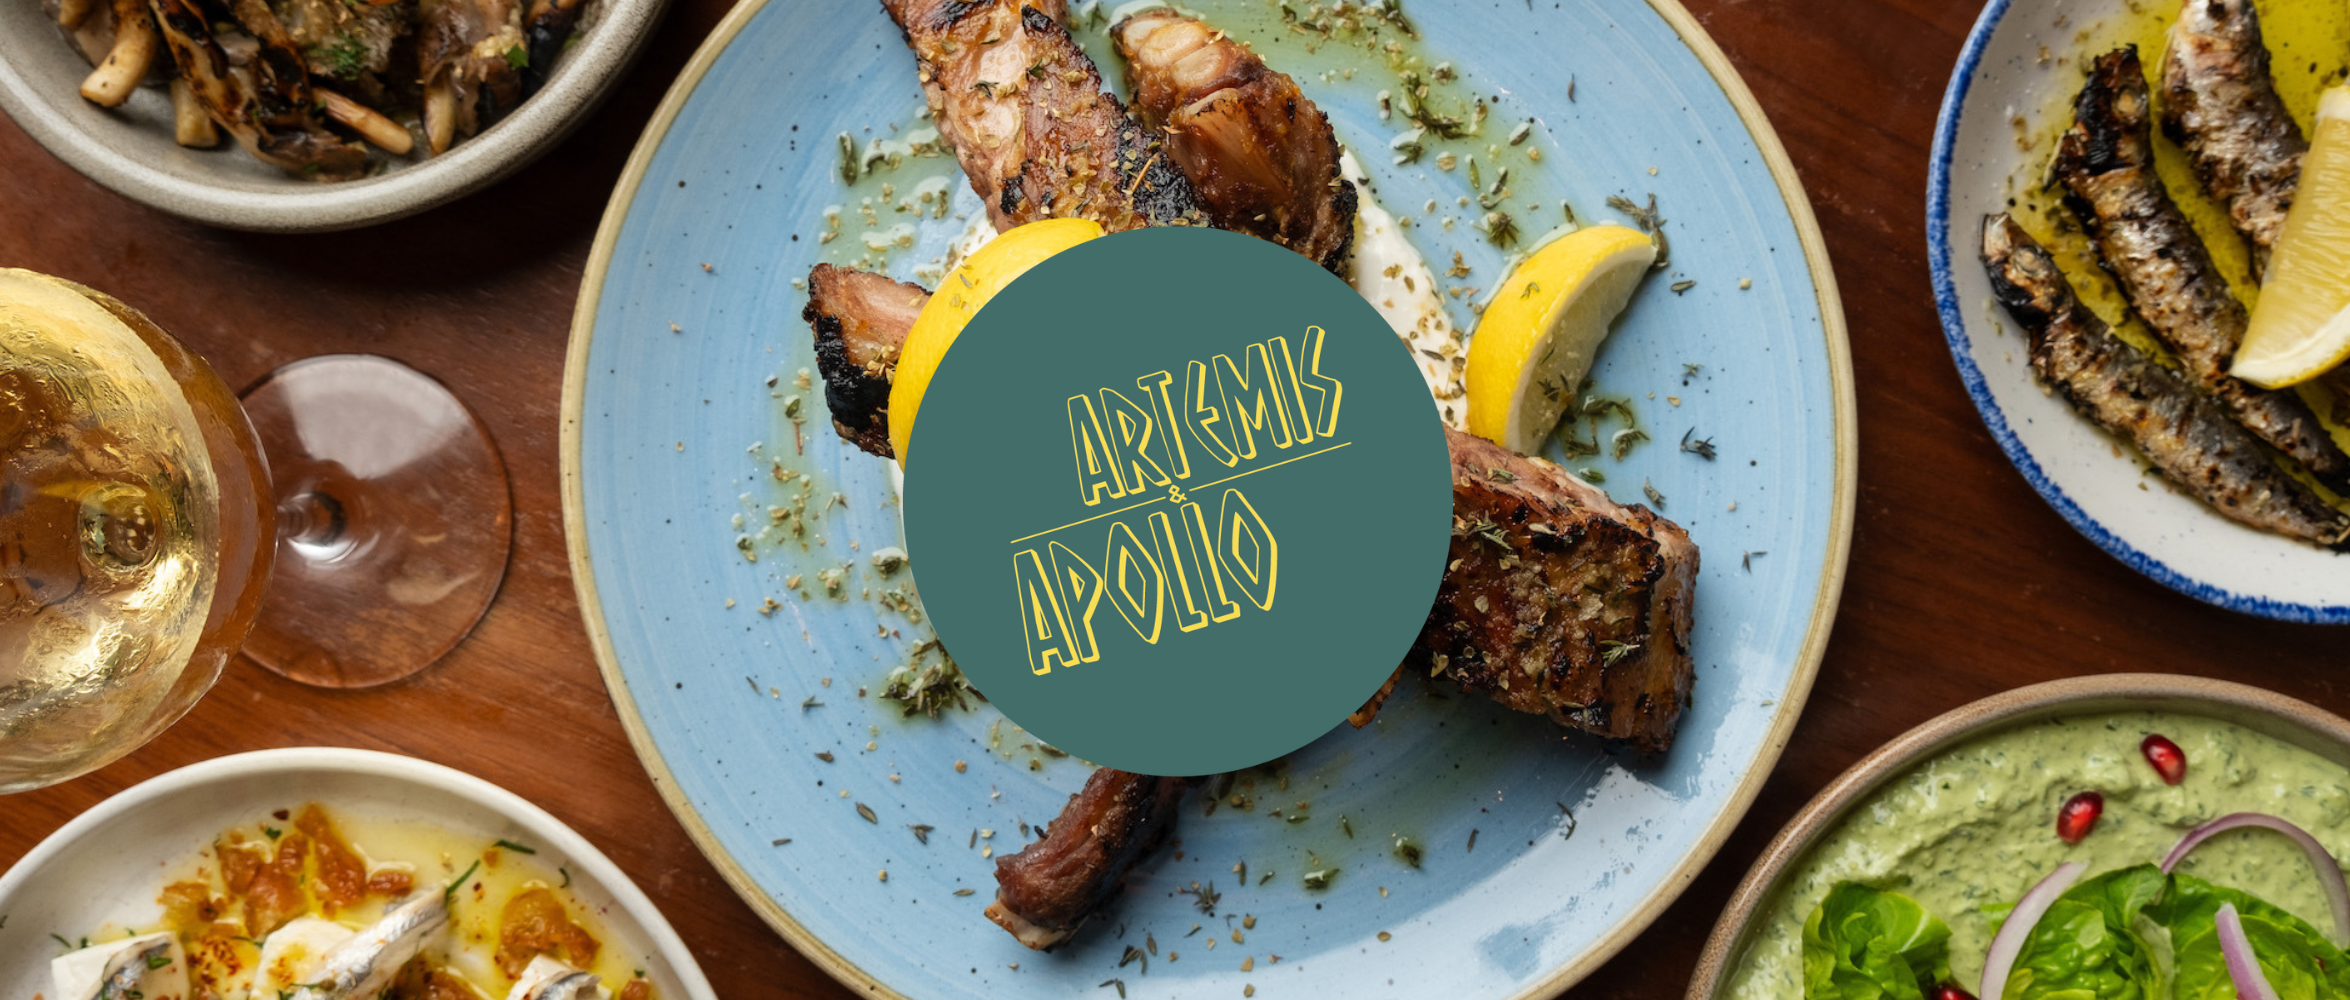 artemis-and-apollo-greek-restaurant-banner-02-lamb-chops.png